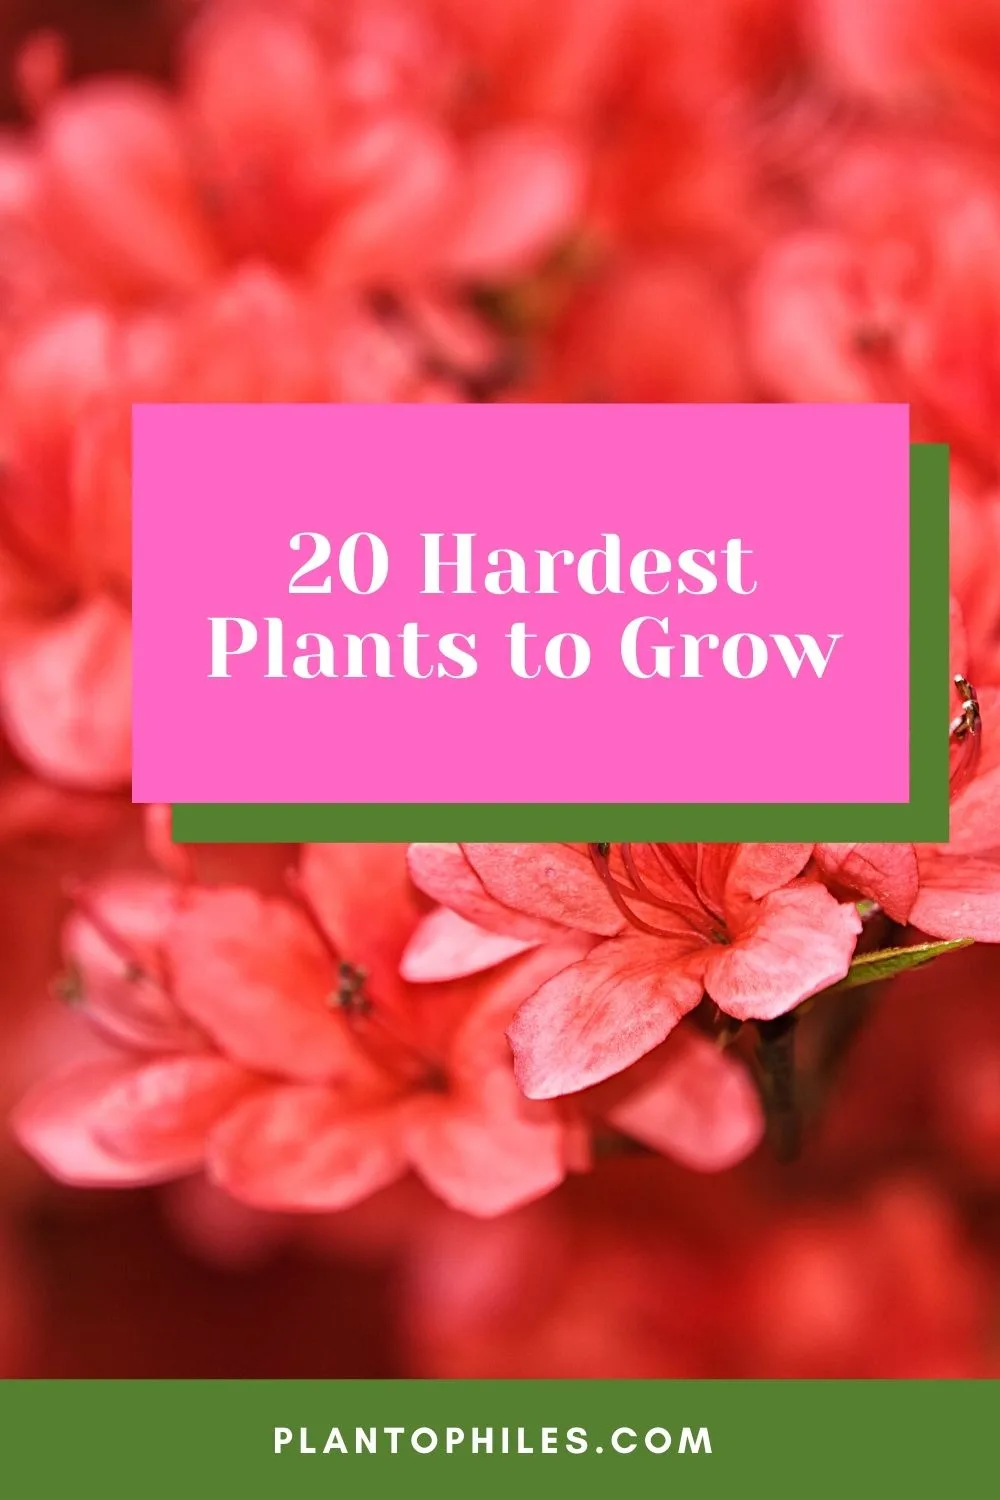 20 Hardest Plants to Grow